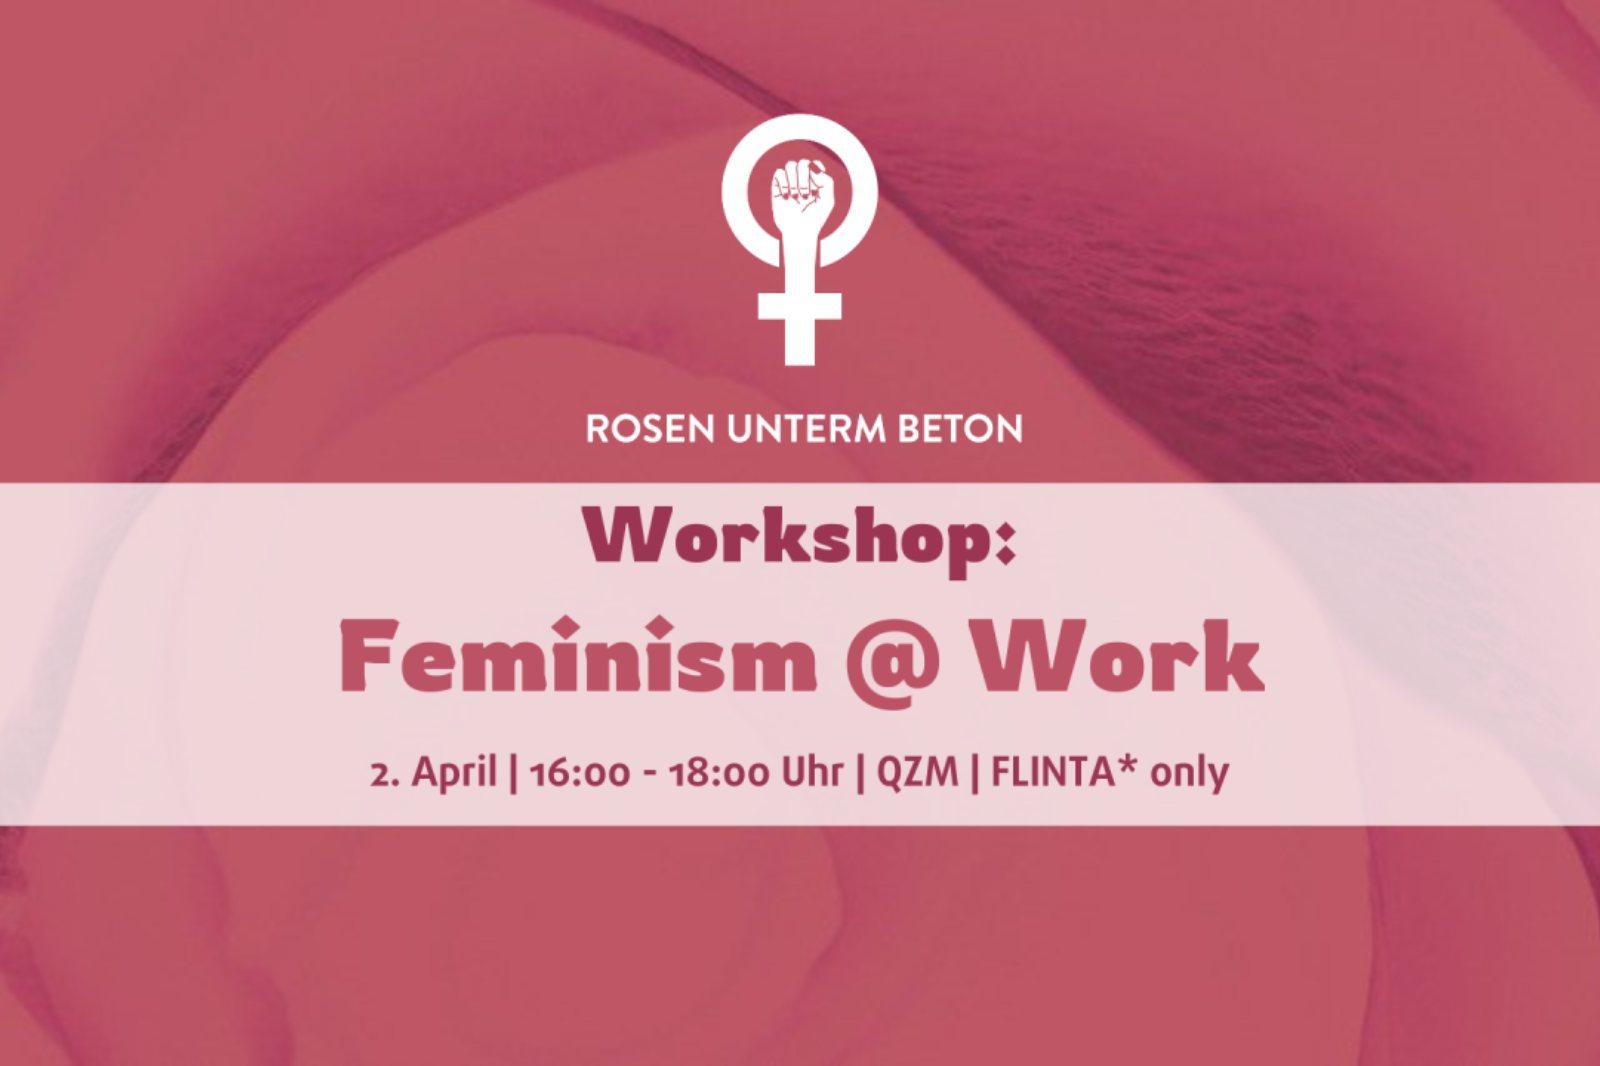 Logo von ROSEN UNTERM BETON. Ankündigung für Workshop am 02. April, mit vorheriger Anmeldung